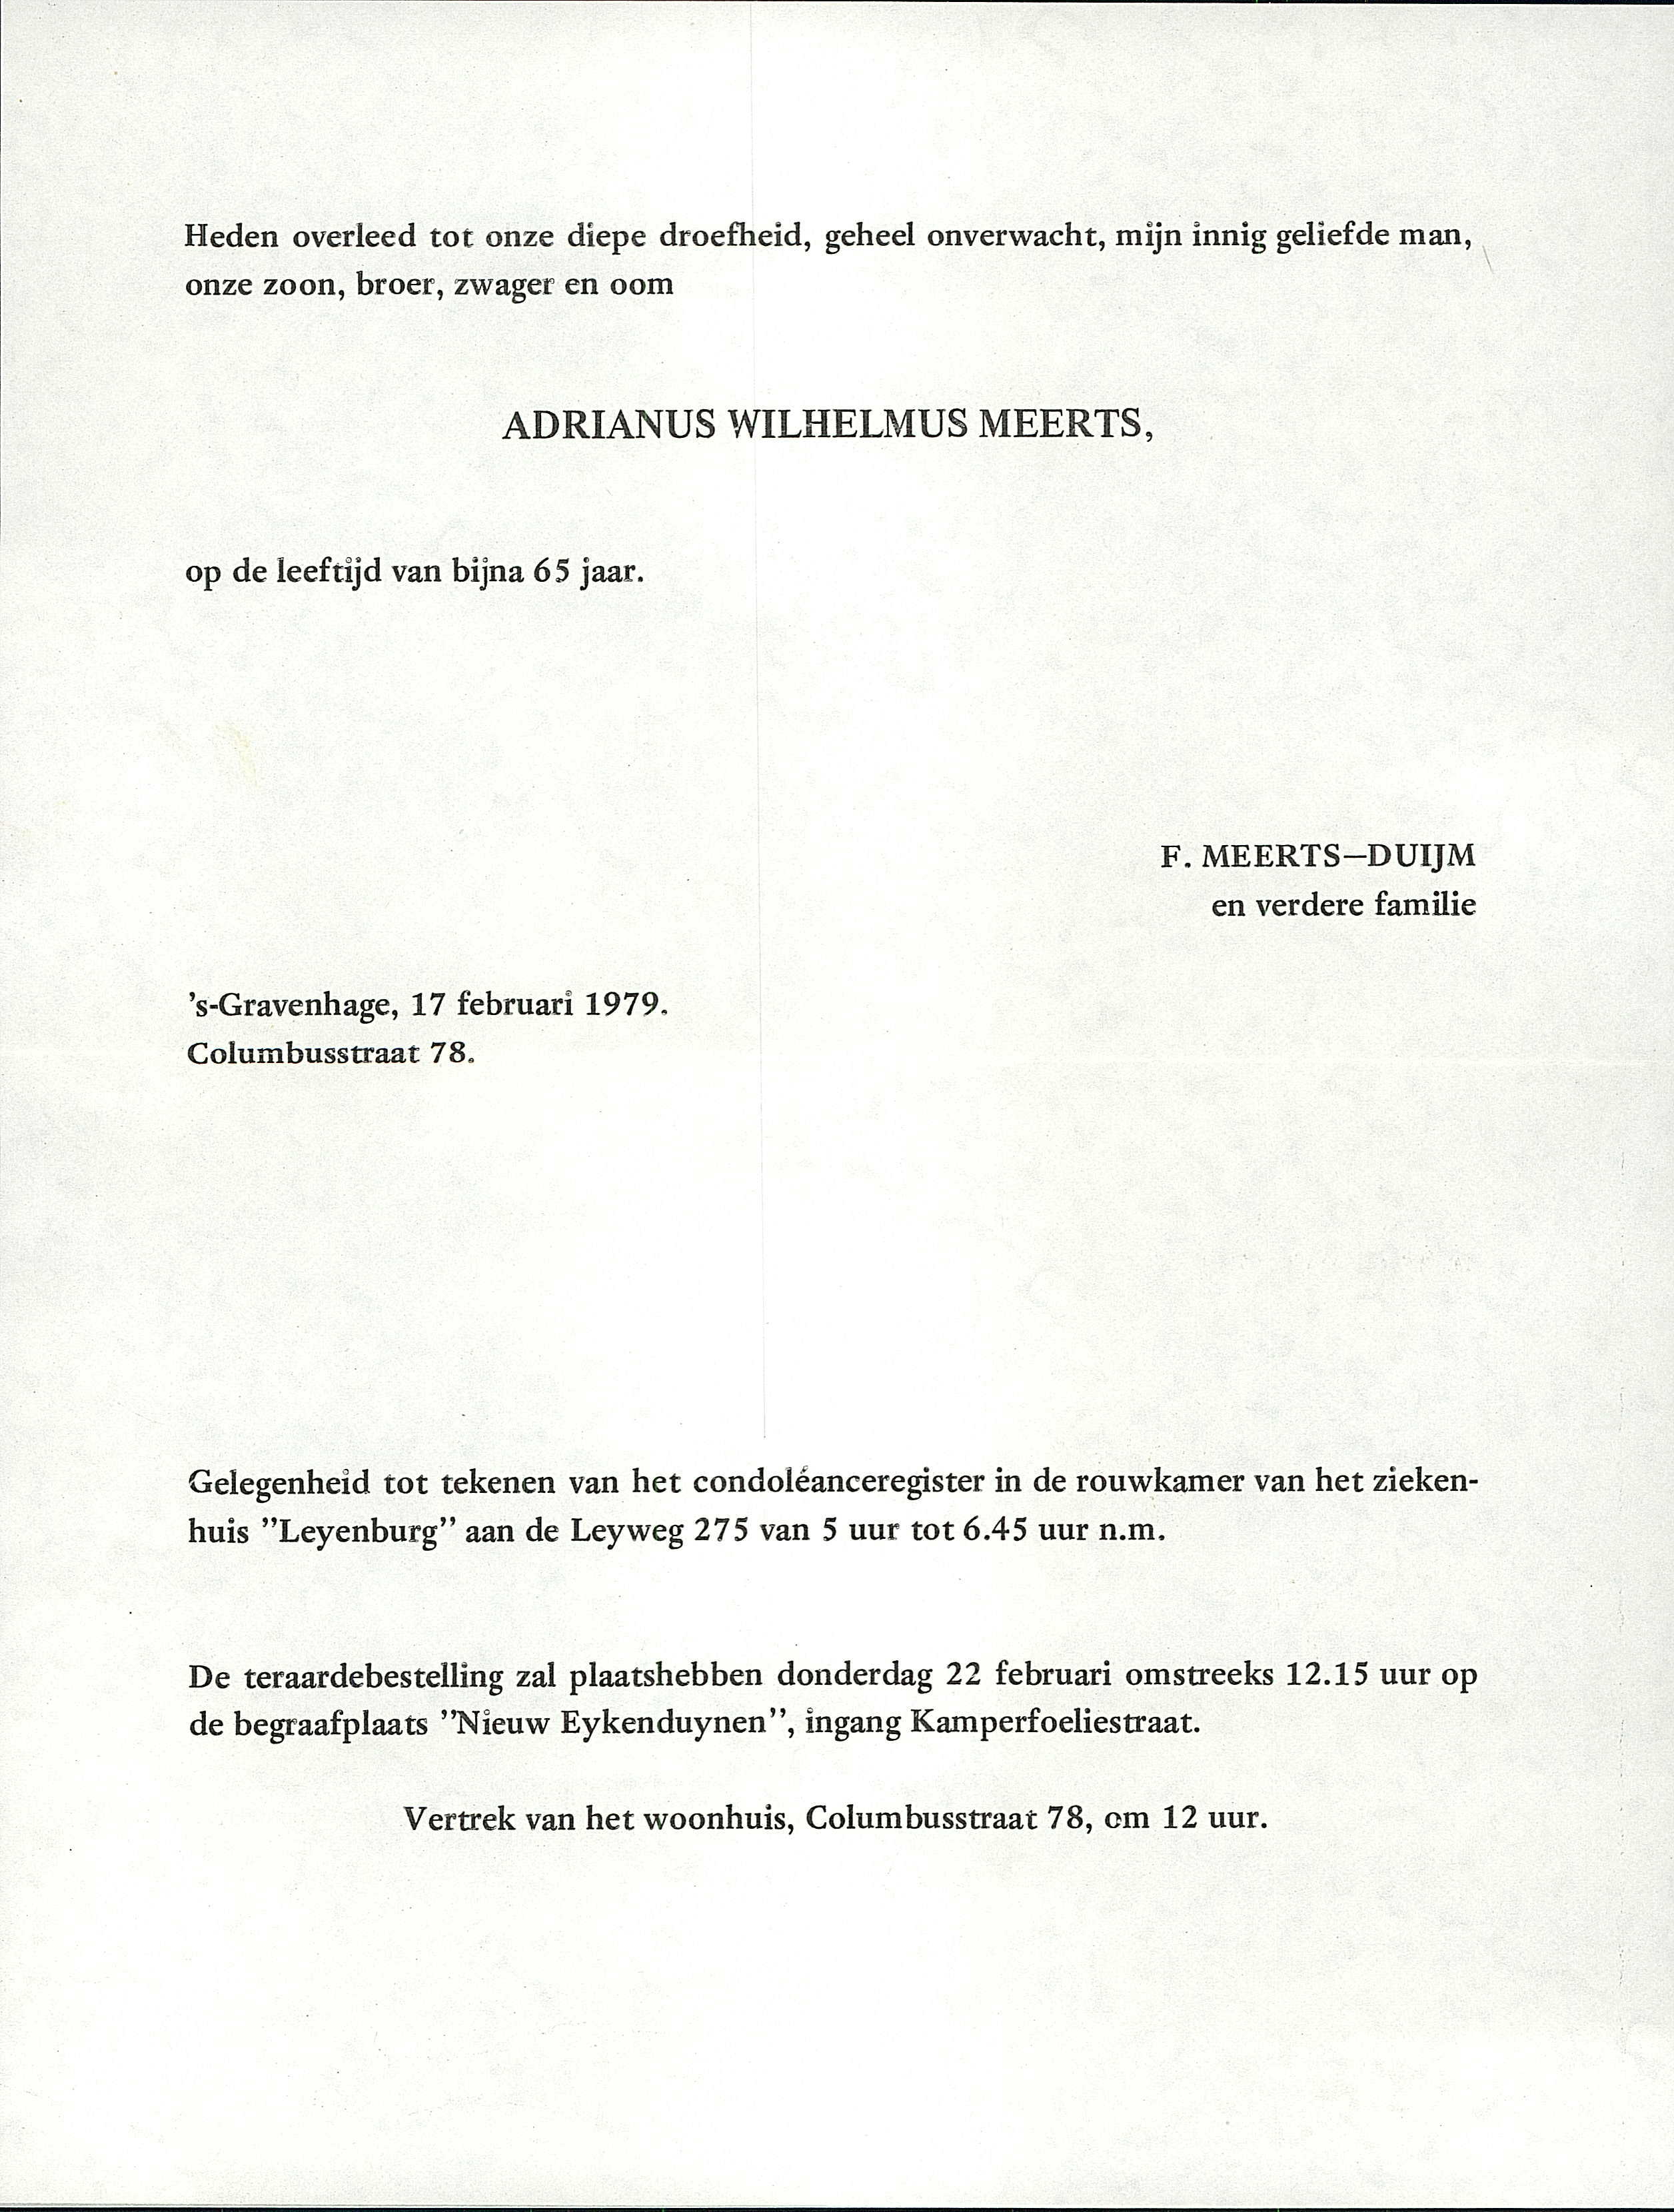 1979OverlijdenDenHaag-AdrianusWilhelmusMeerts17Feb1979.jpg